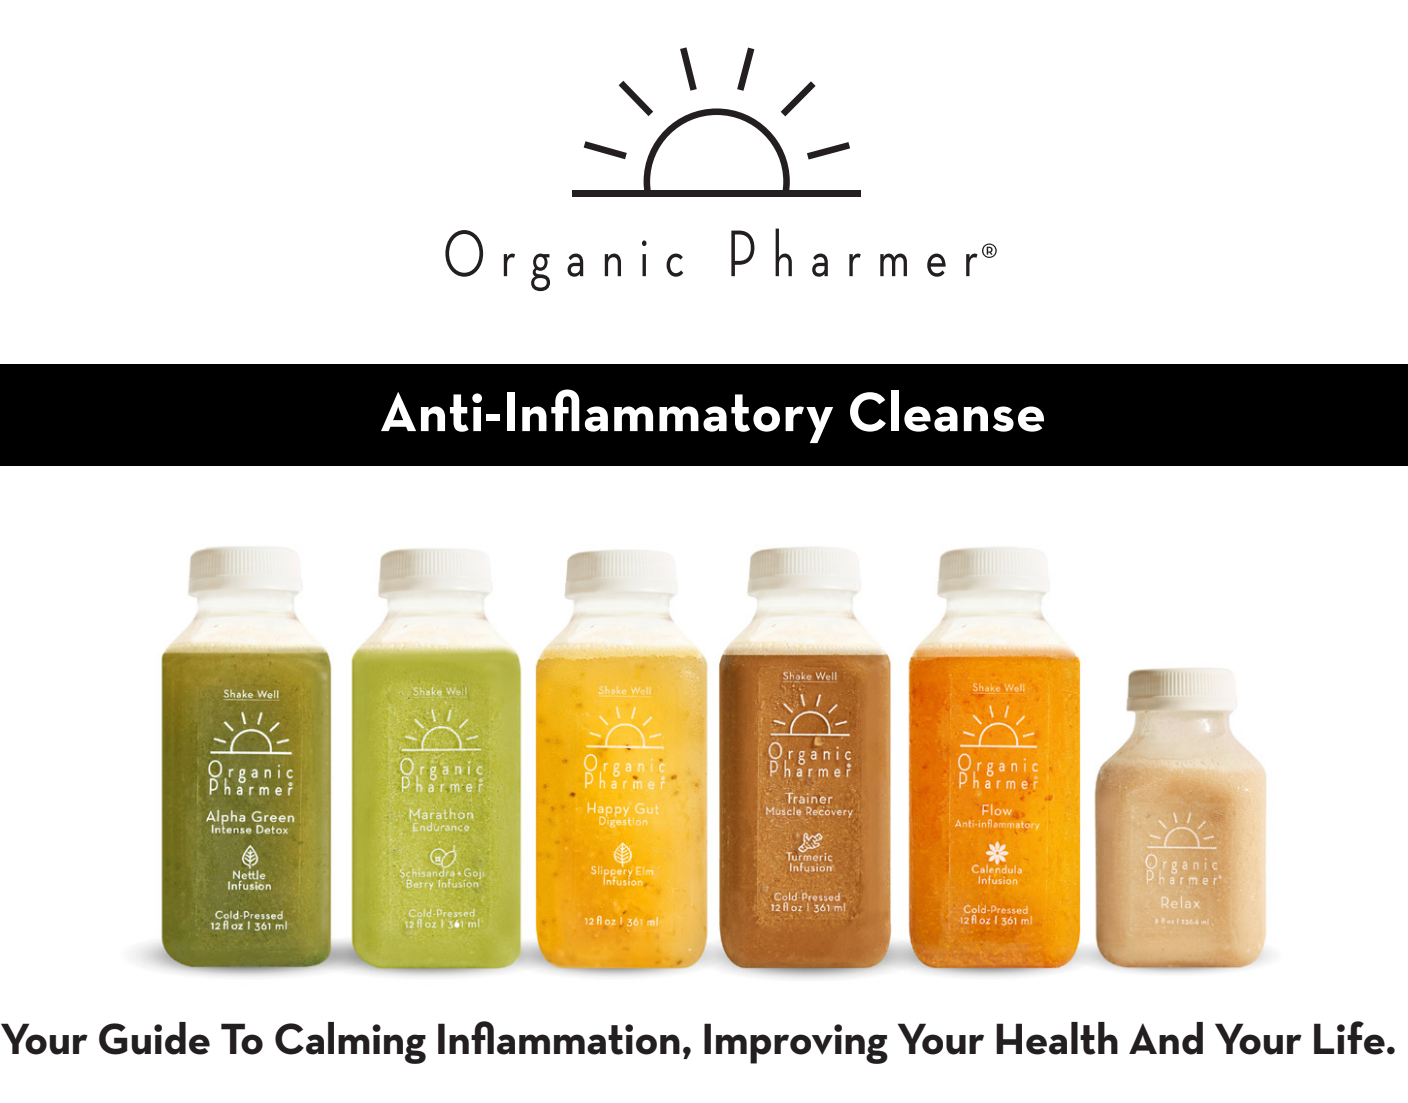 5-Day Anti-Inflammatory Cleanse – Organic Pharmer